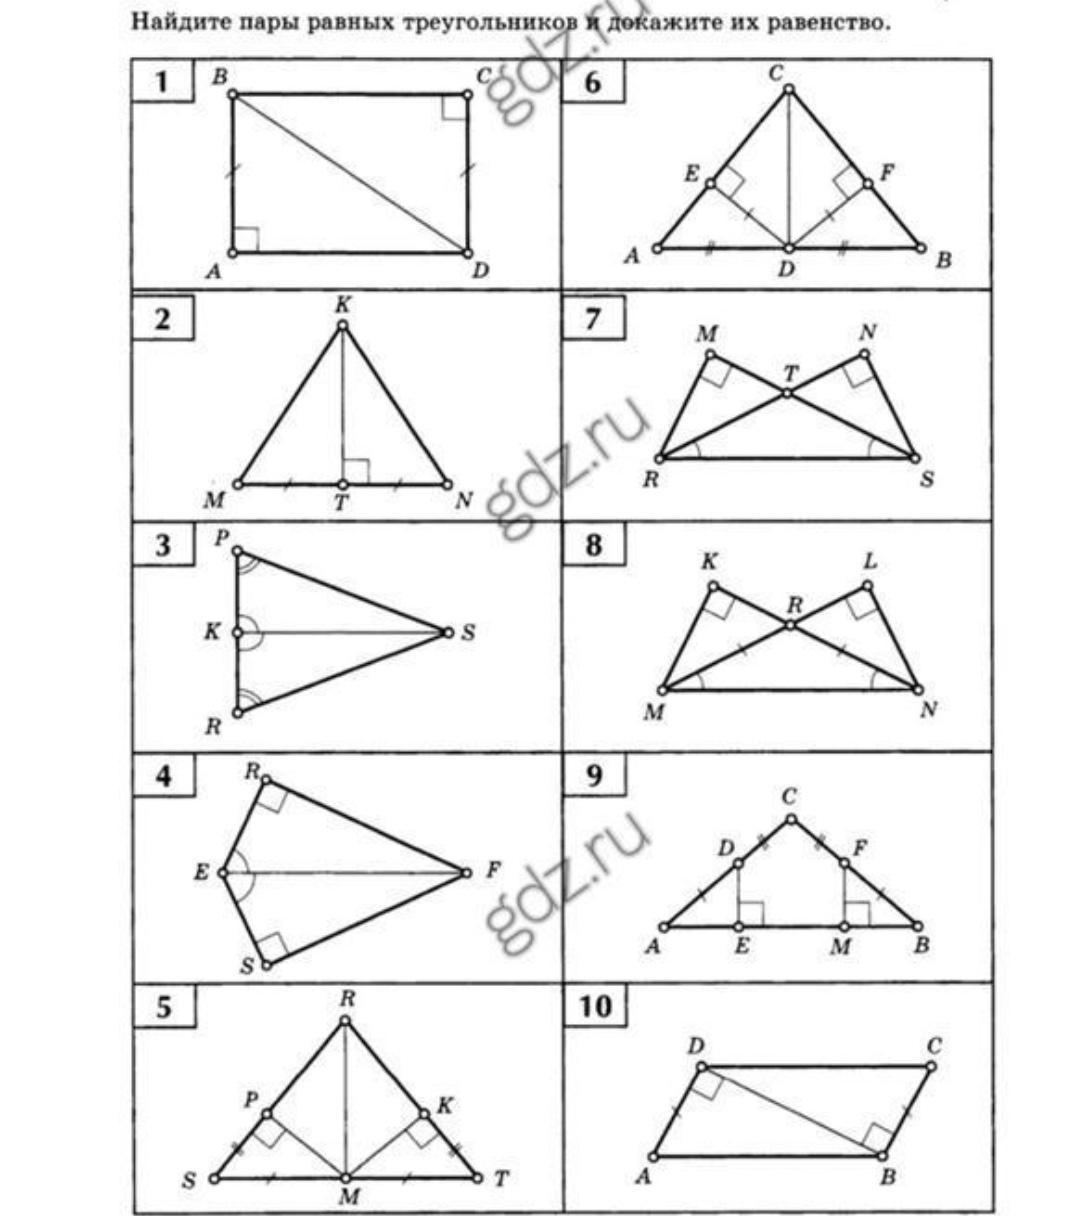 Задачи на чертежах 7 классы. Признаки равенства прямоугольных треугольников задачи. Задачи на признаки равенства прямоугольных треугольников 7 класс. Признаки равенства треугольников 7 класс задачи на готовых. Задачи на чертежах признаки равенства треугольников.